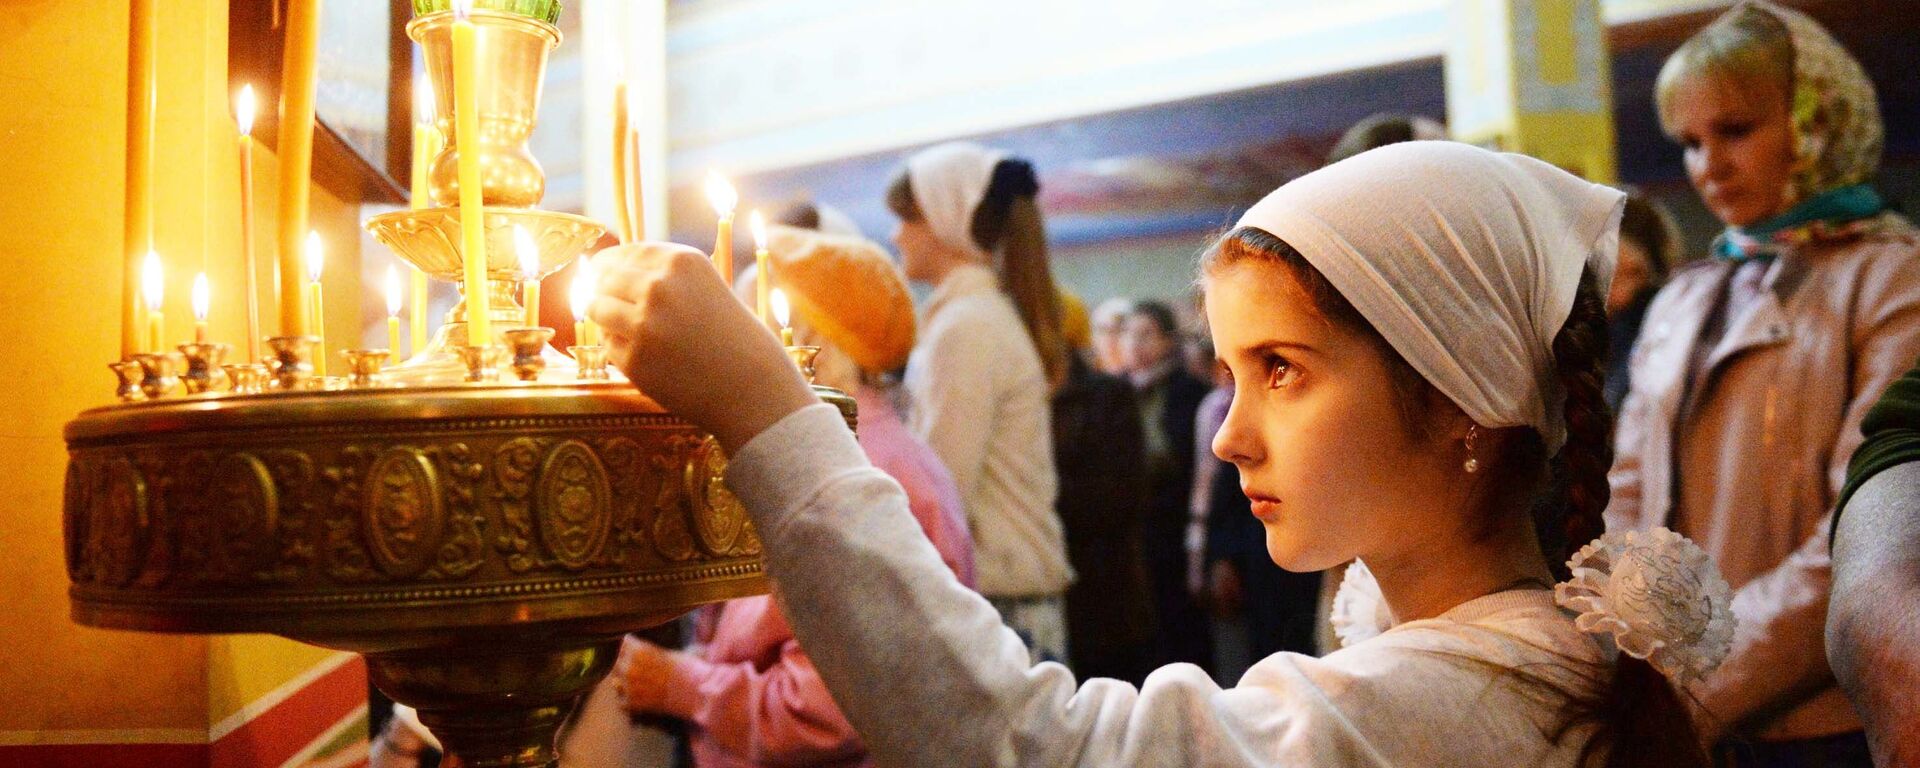 Девочка ставит свечку в православном храме, архивное фото - Sputnik Таджикистан, 1920, 20.02.2021